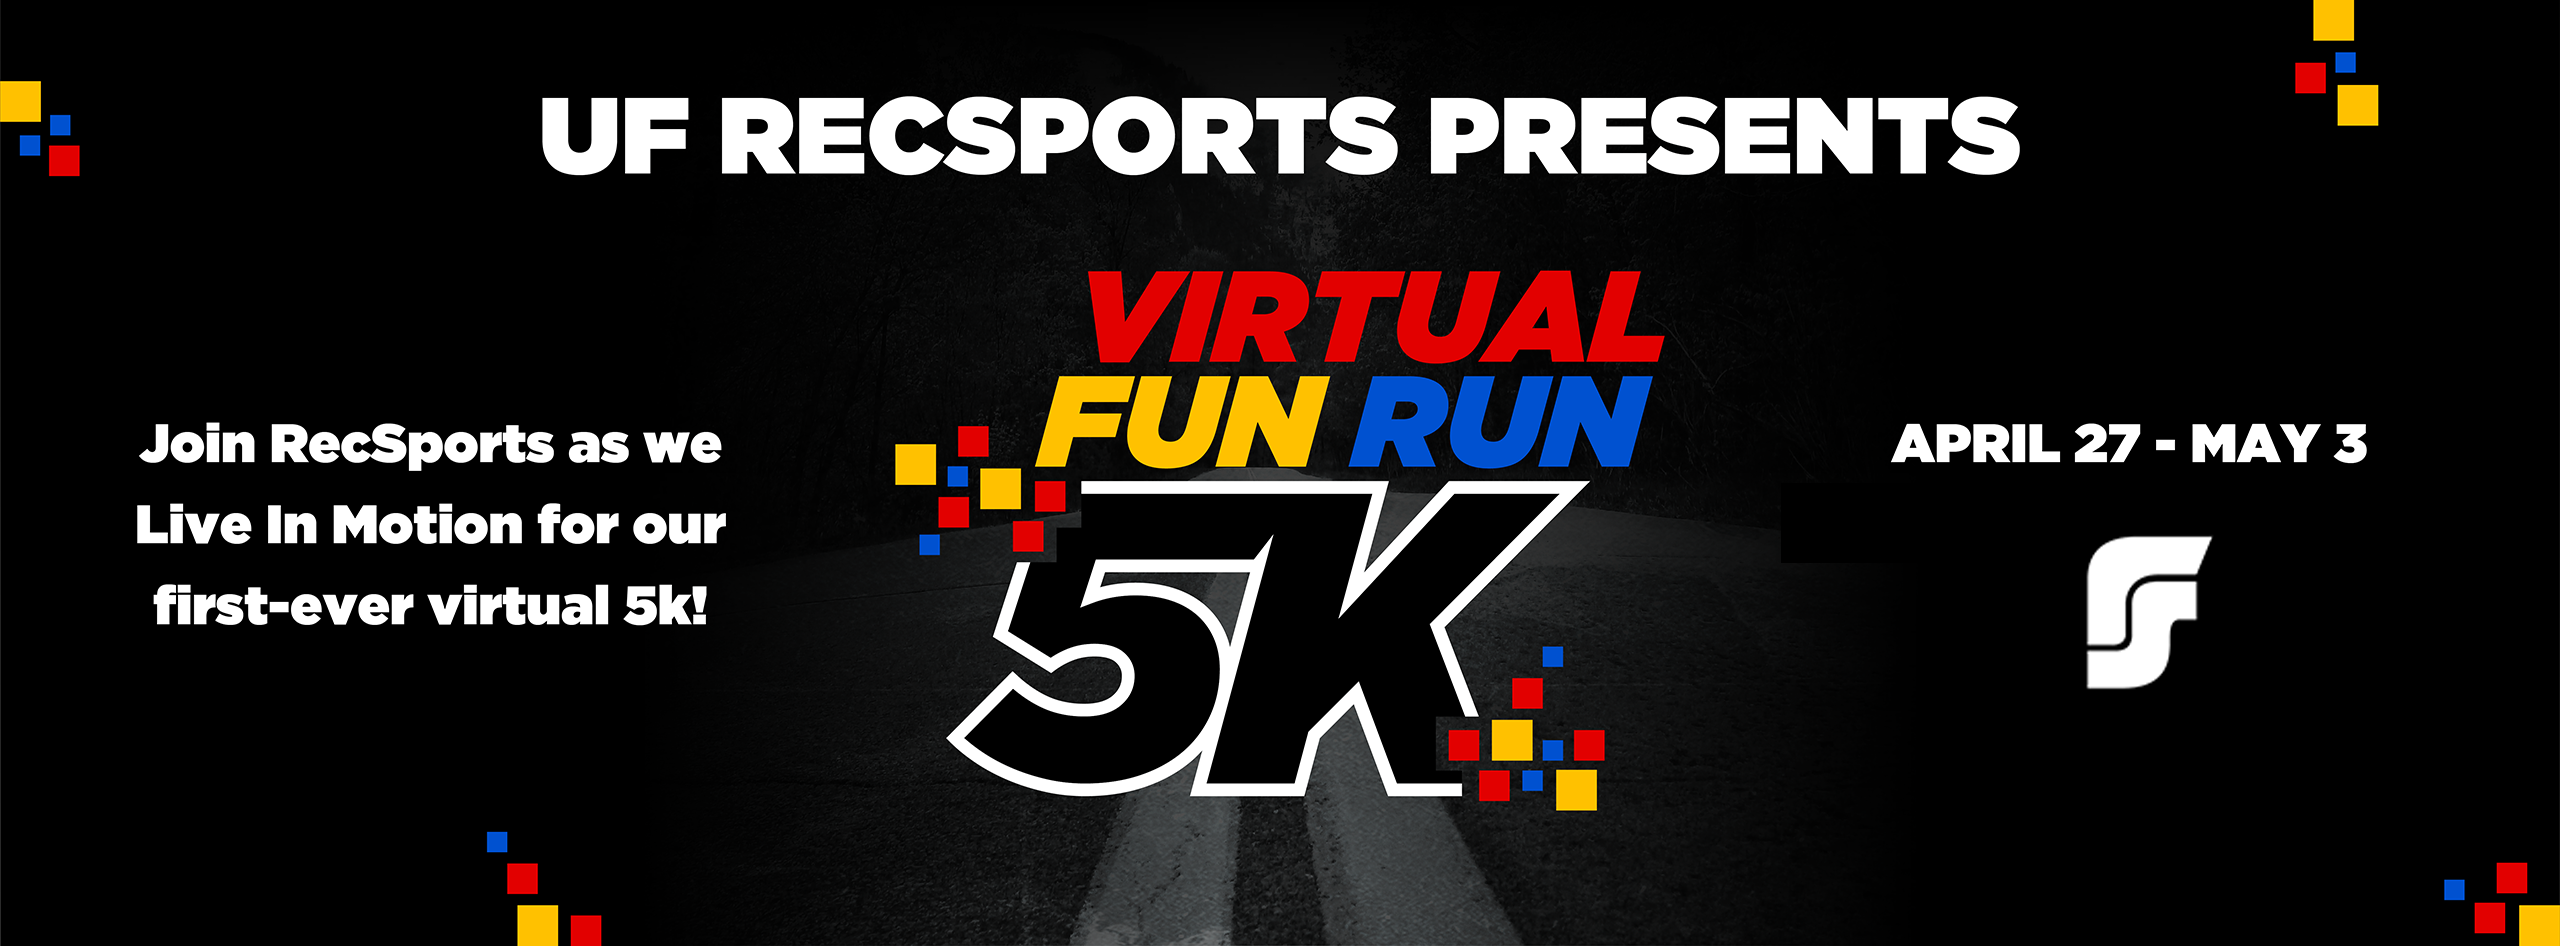 RecSports Virtual Fun Run 5k